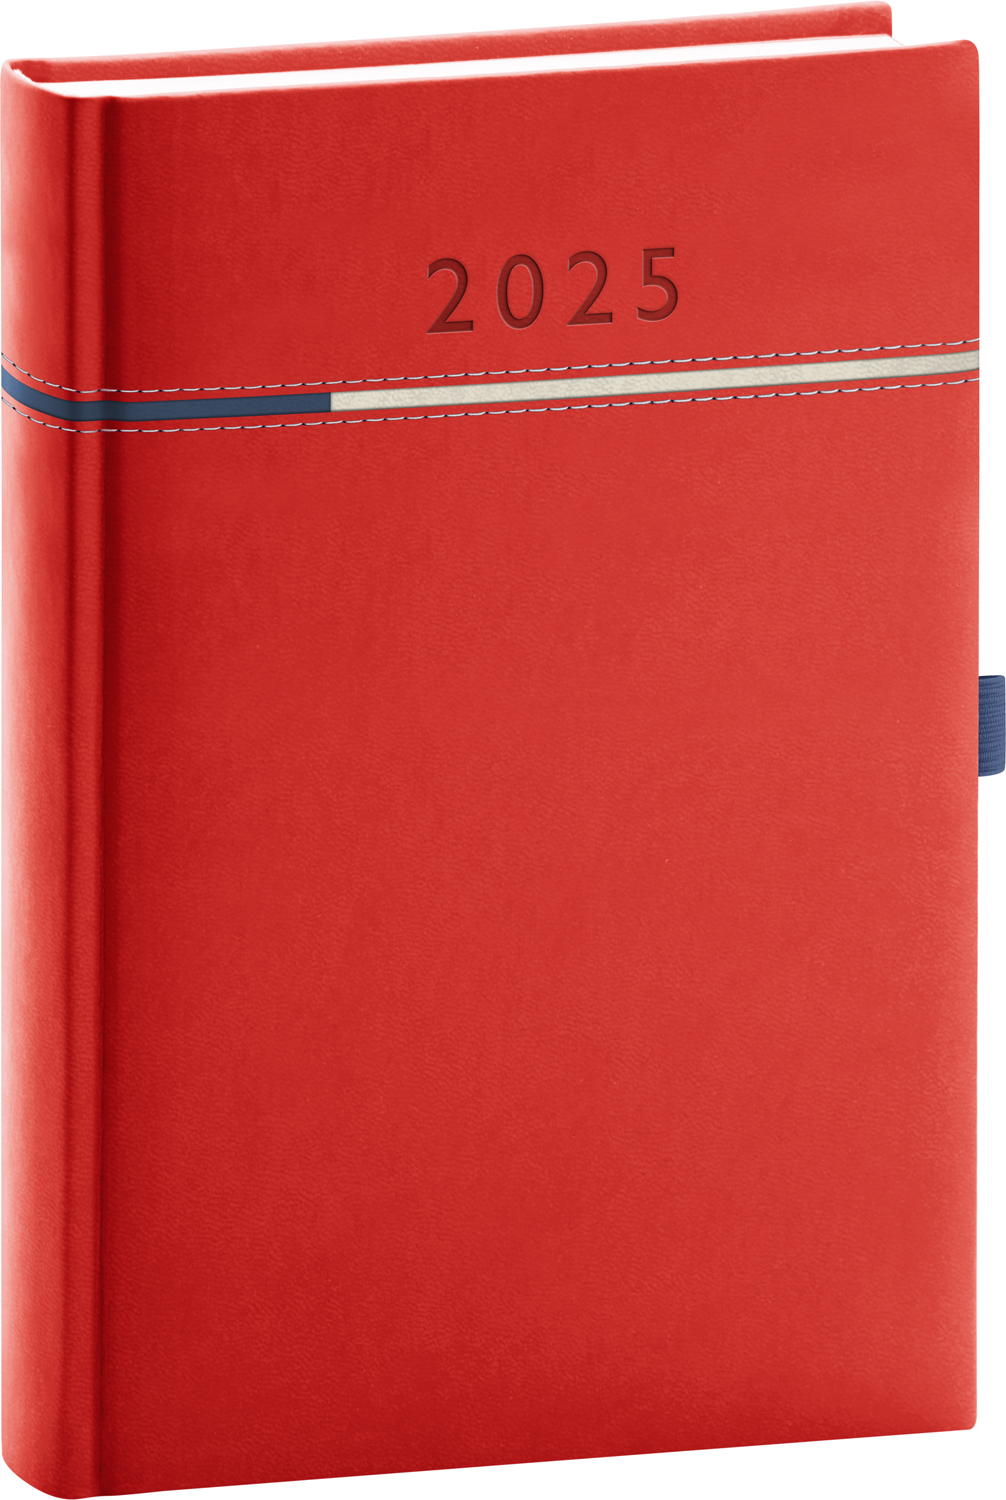 Denní diář Tomy 2025, A5 - červená